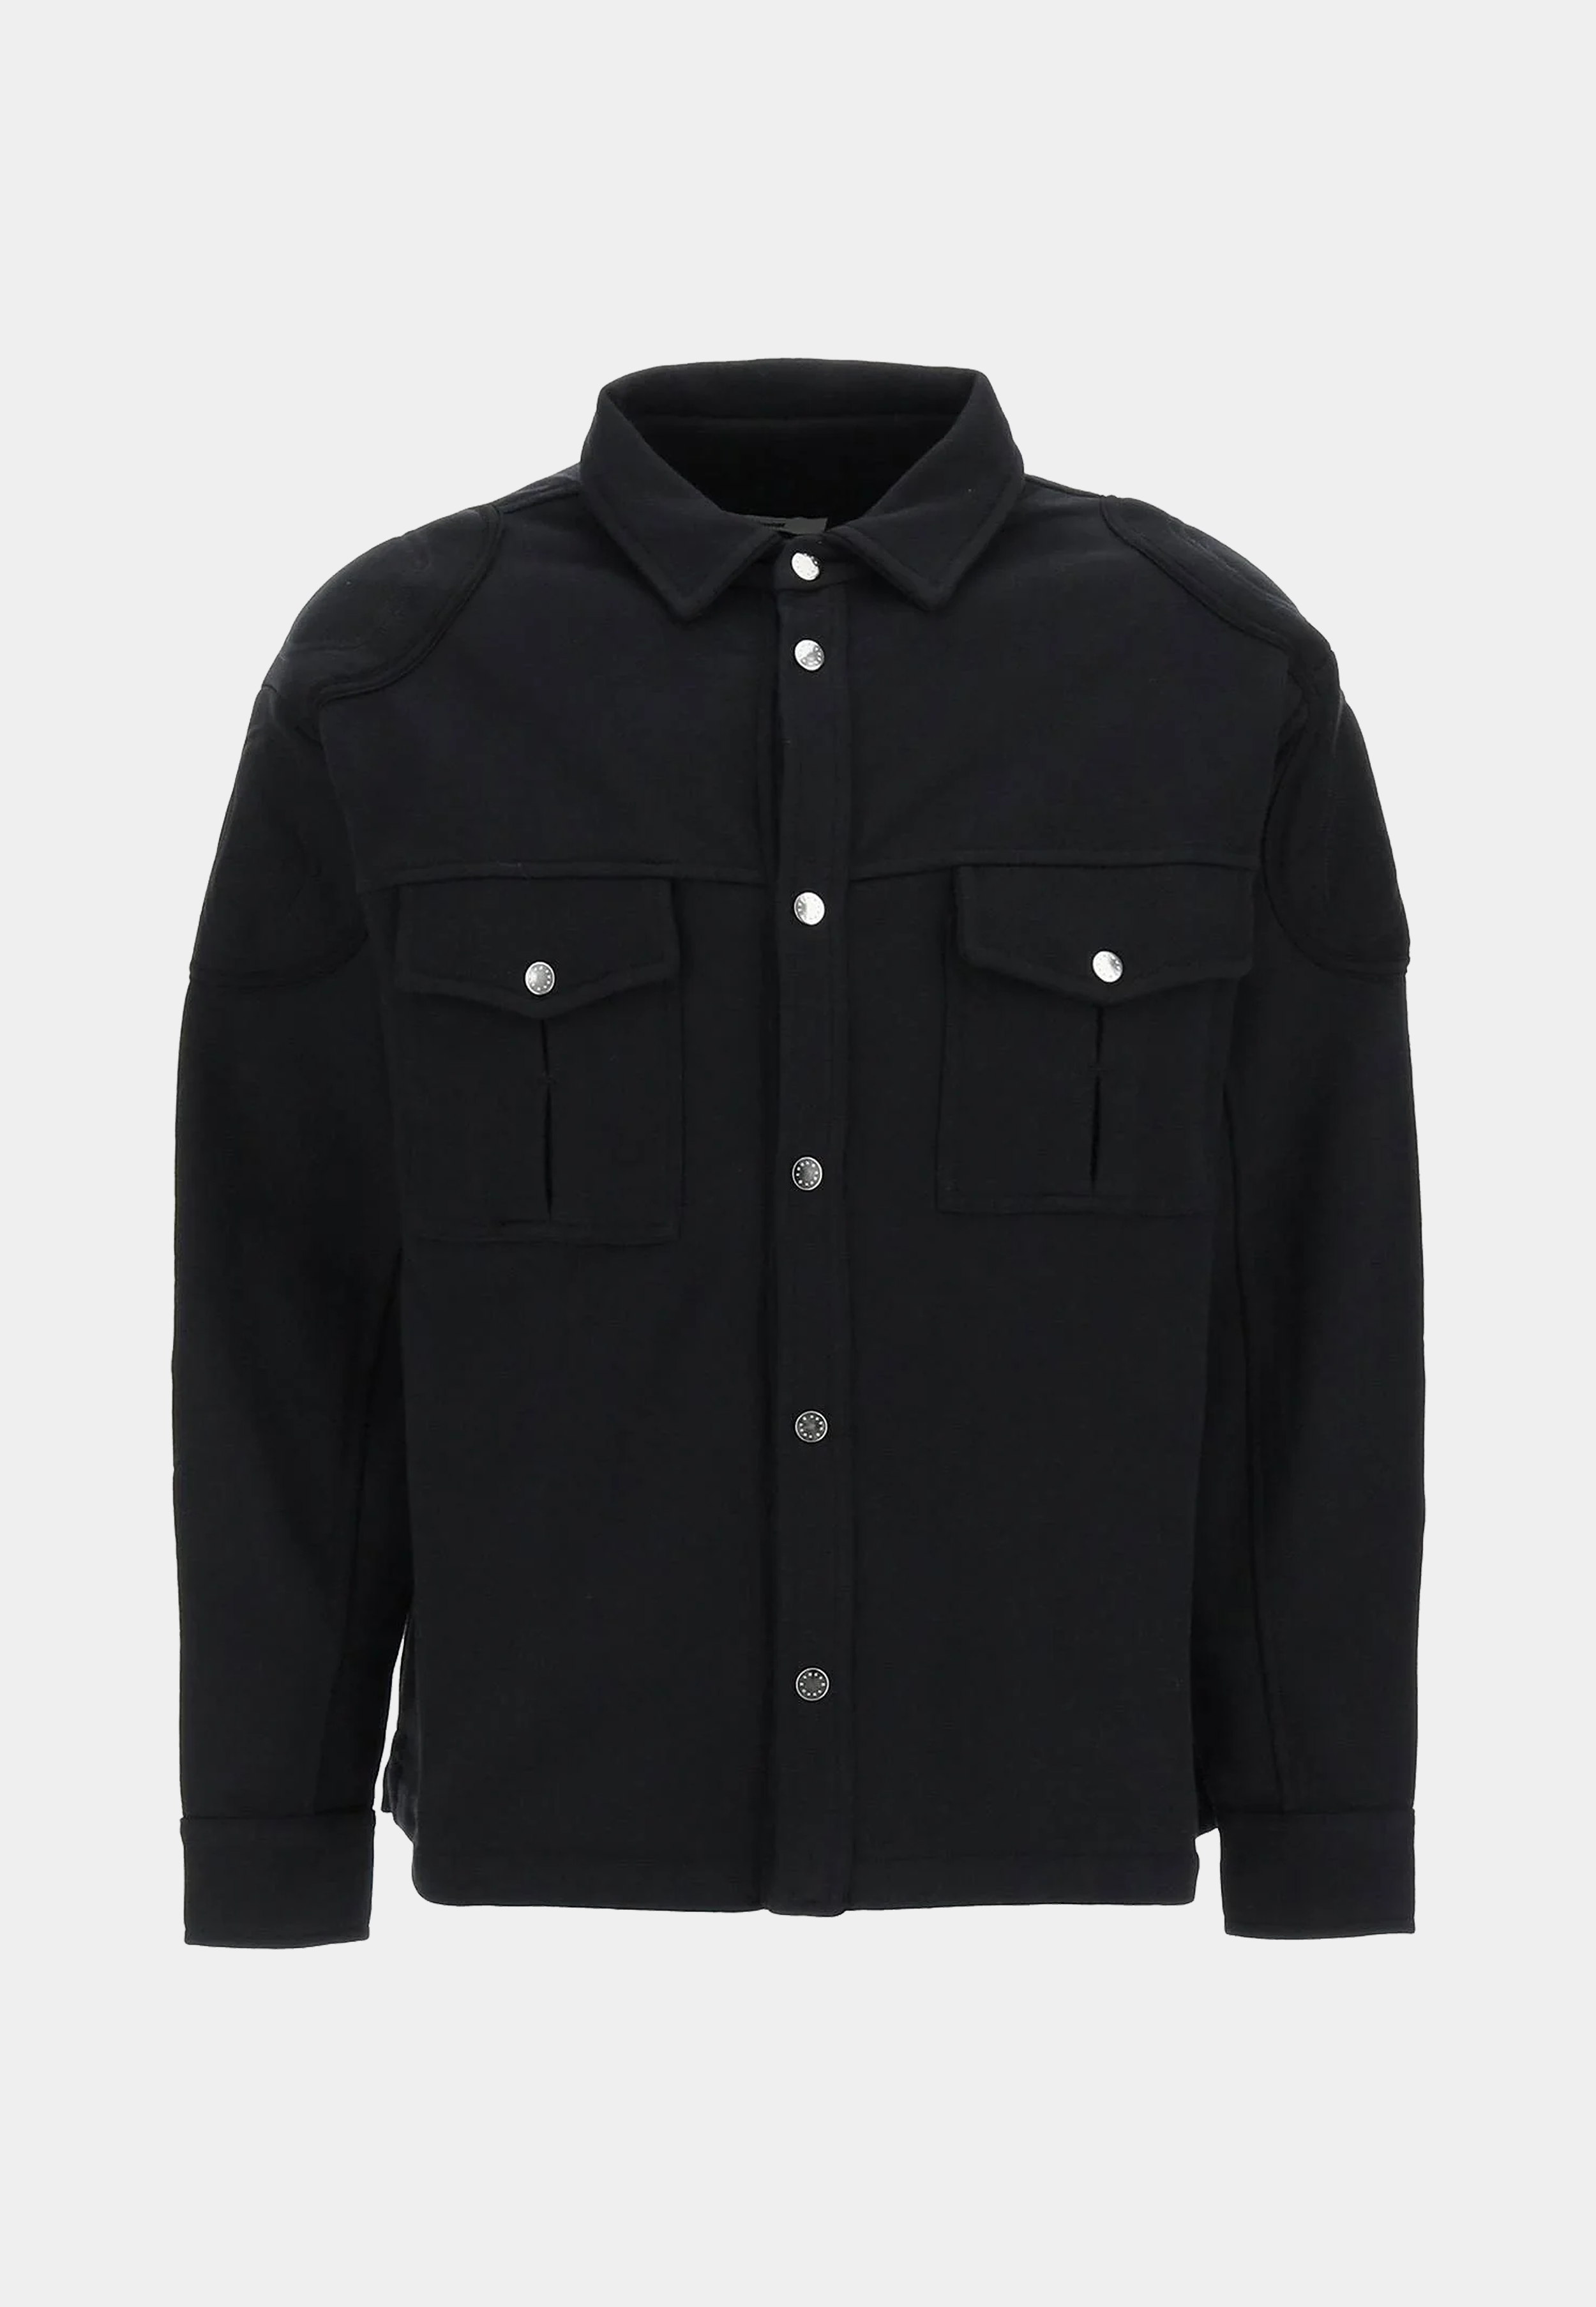 Gmbh Knitted Overshirt Black